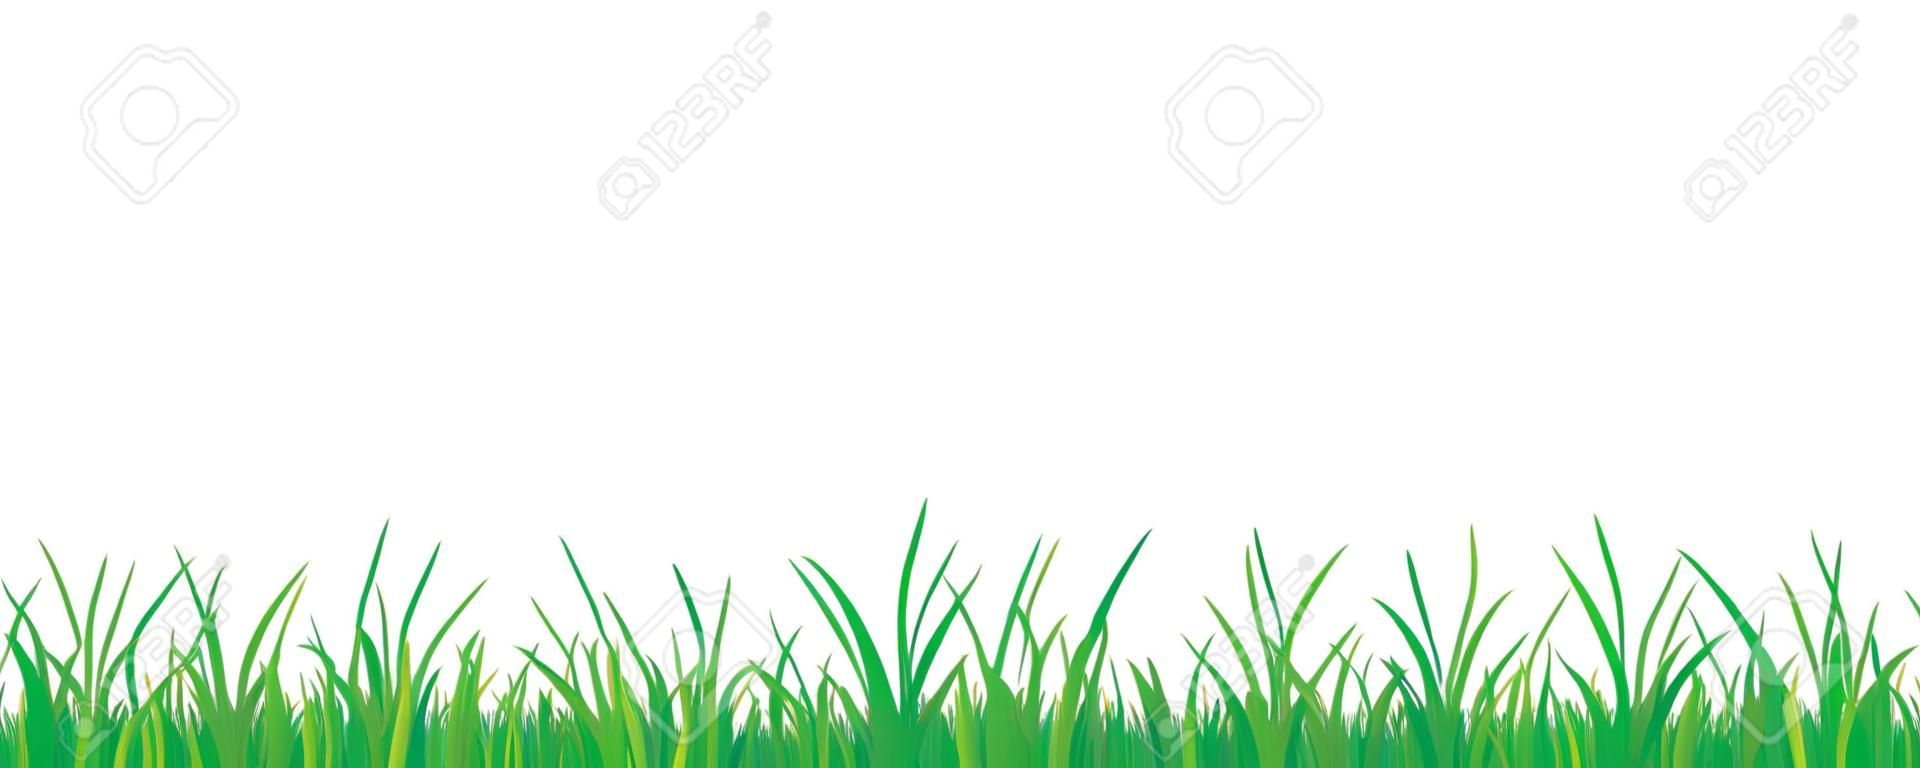 grama verde prado fronteira vector padrão isoladet em um fundo branco vector ilustração EPS10